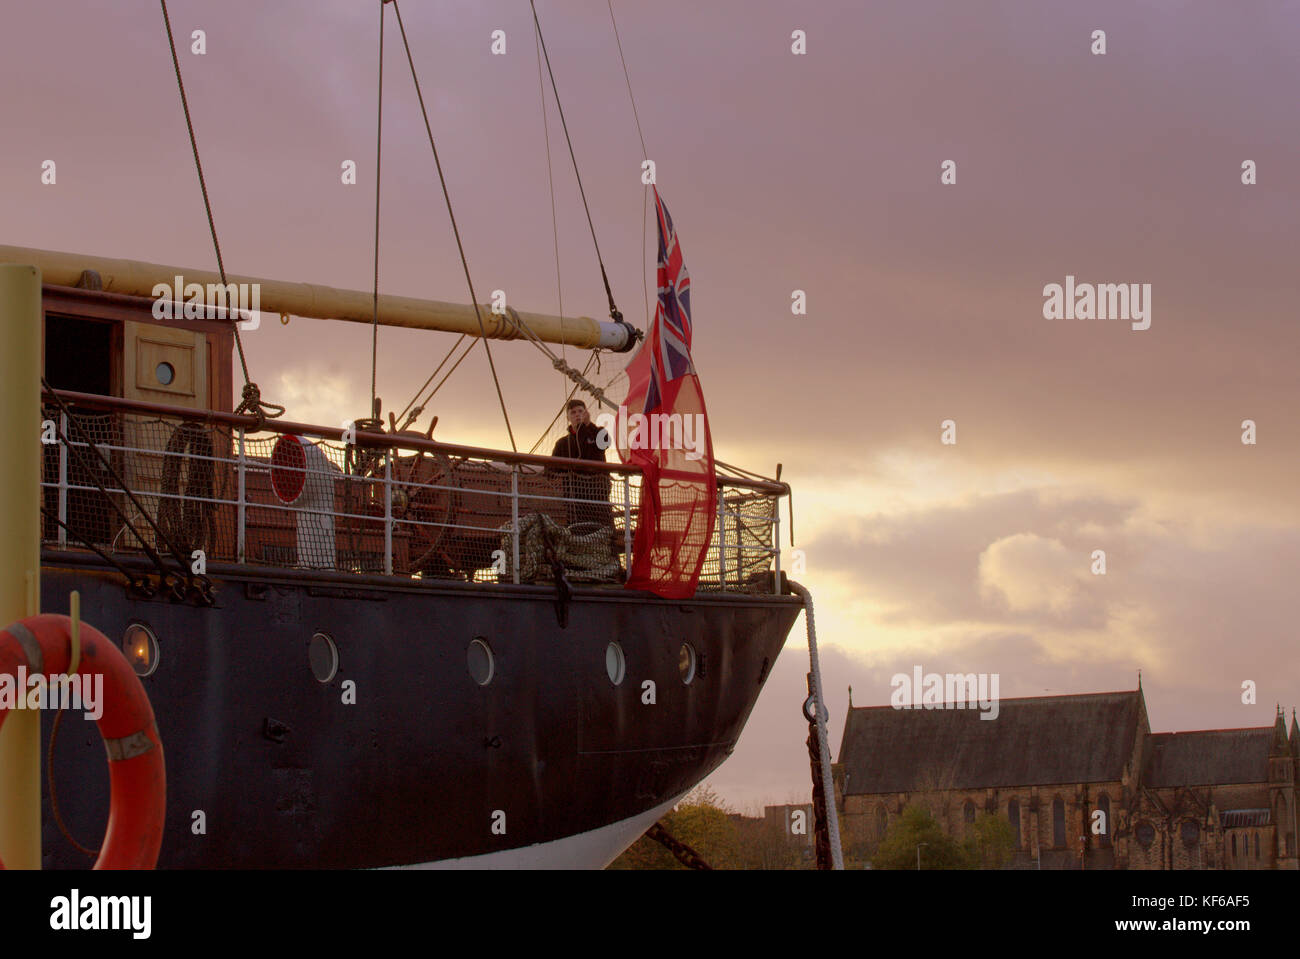 Jeune garçon de la descente du drapeau marine sur le navire glenlee du Riverside Museum Glasgow Ecosse coucher du soleil Banque D'Images